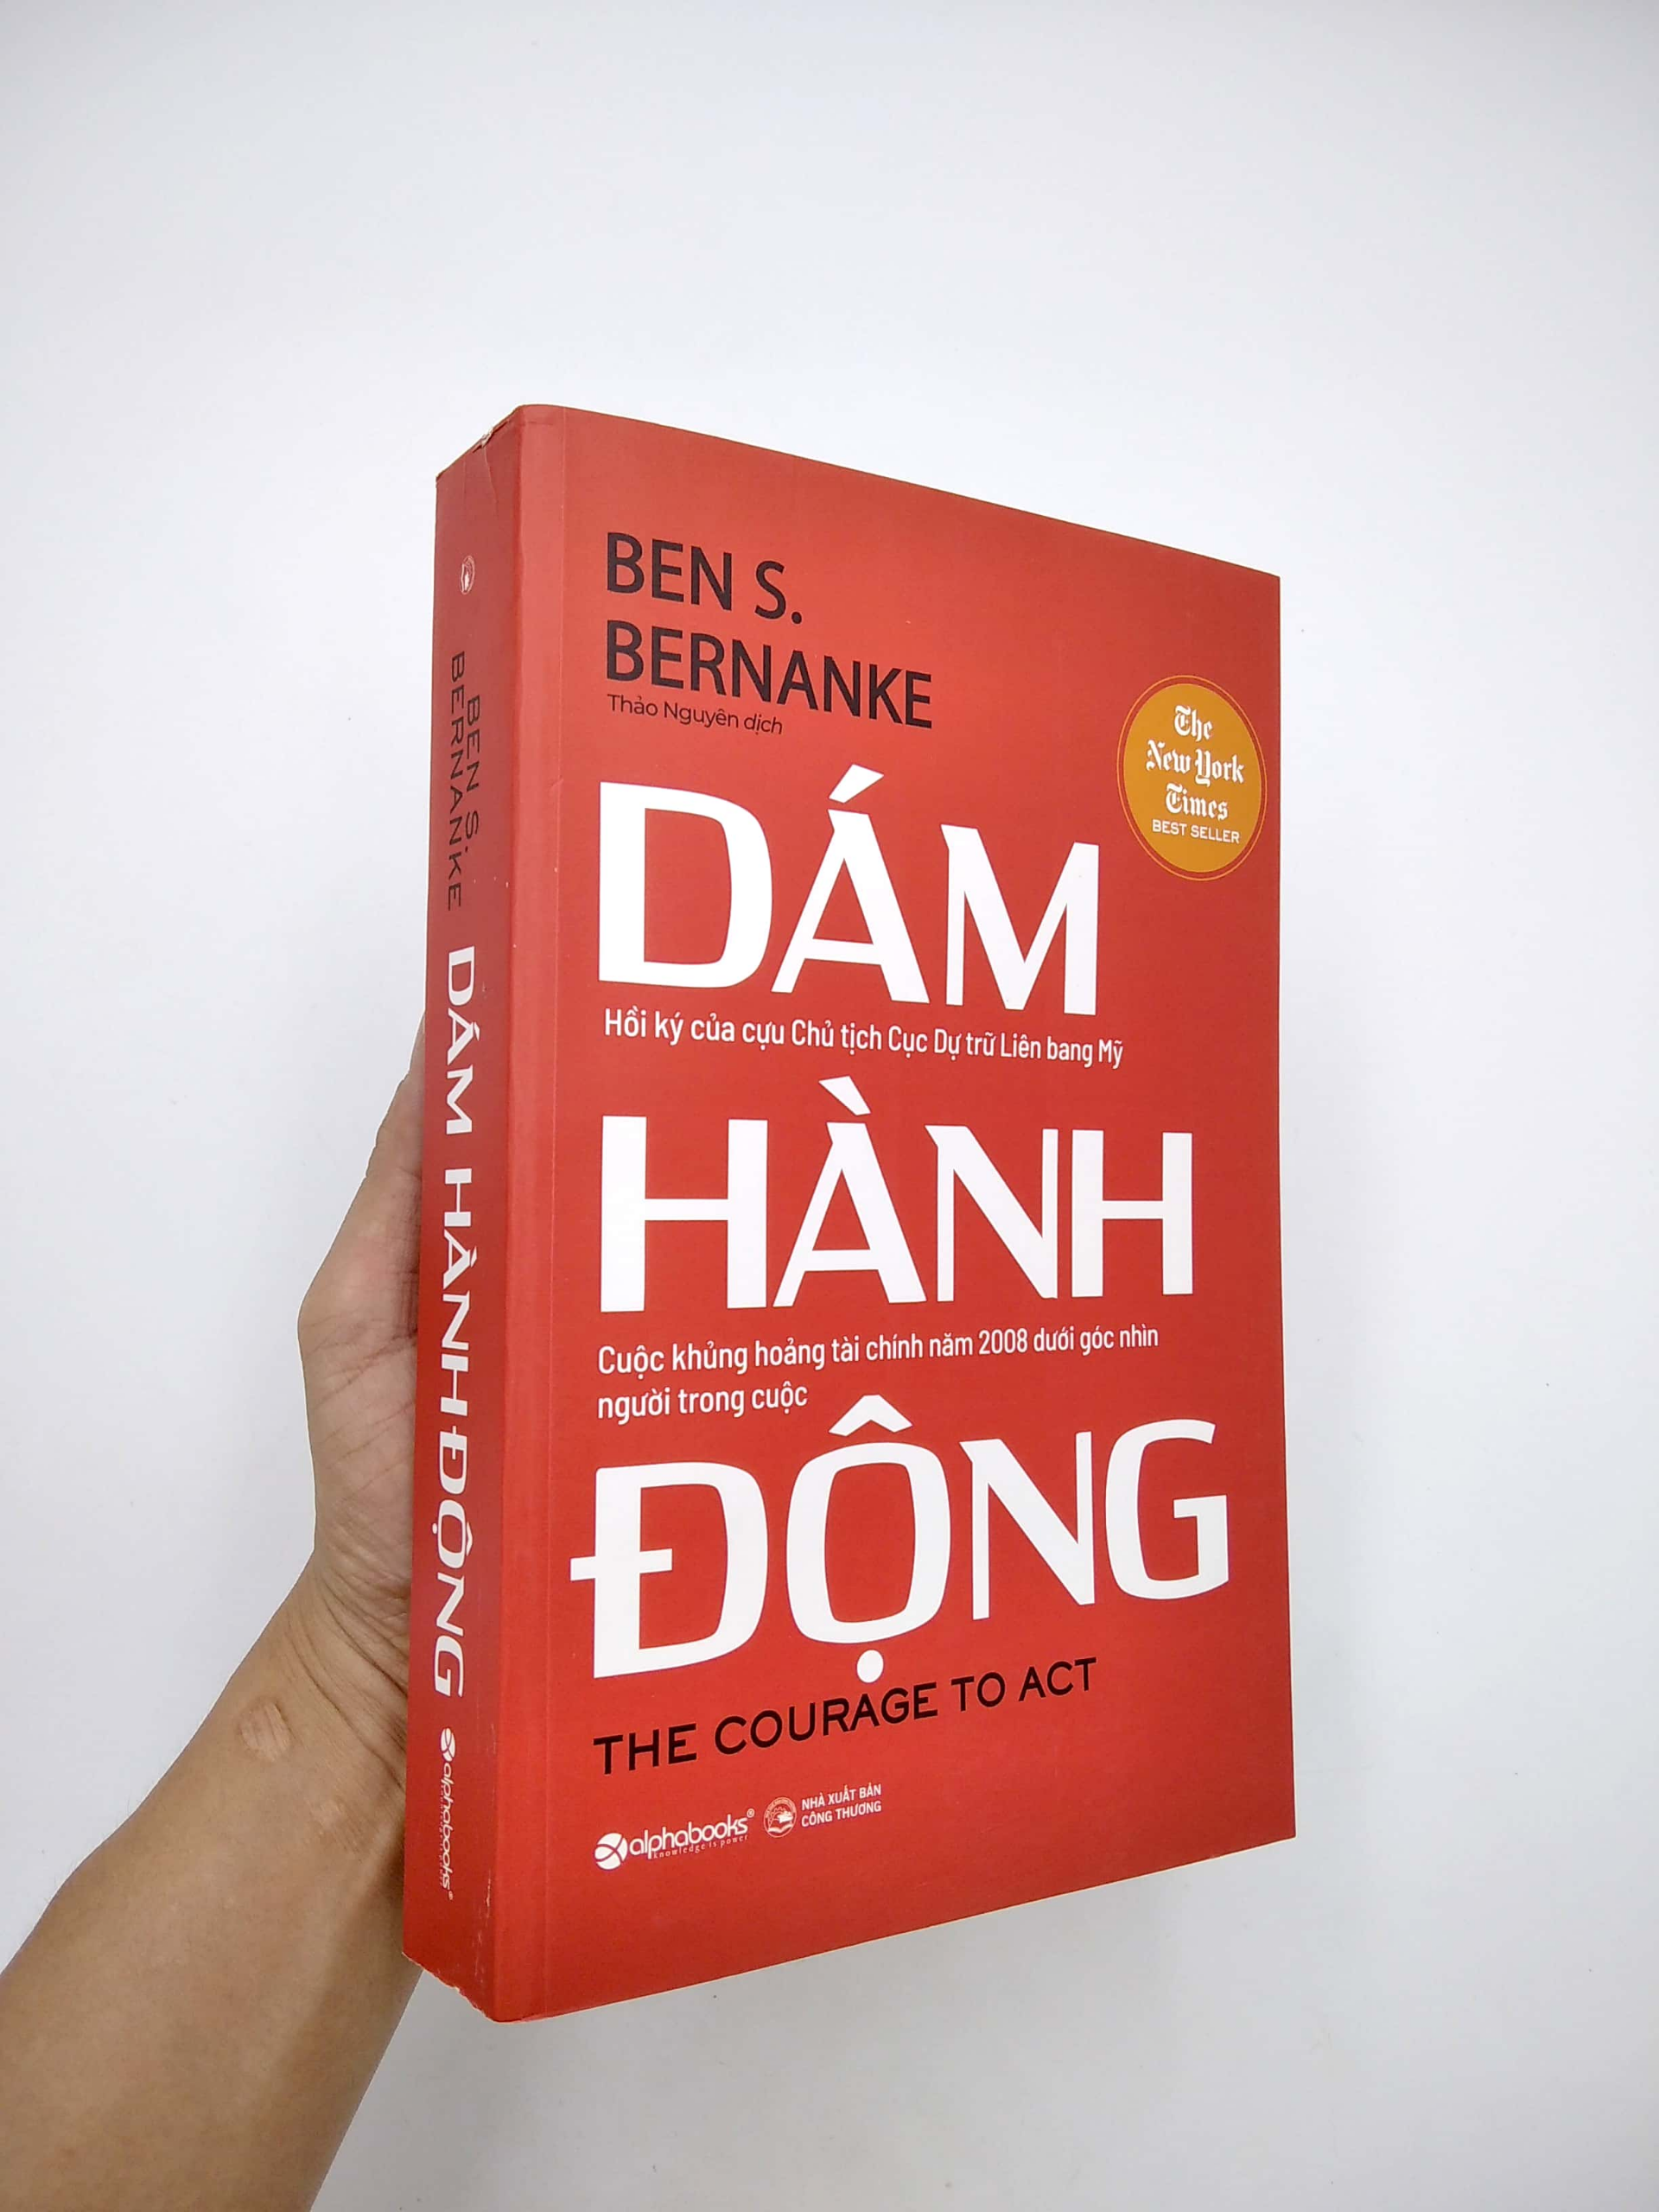 DÁM HÀNH ĐỘNG - Ben S. Bernanke - Thảo Nguyên dịch - (bìa mềm)